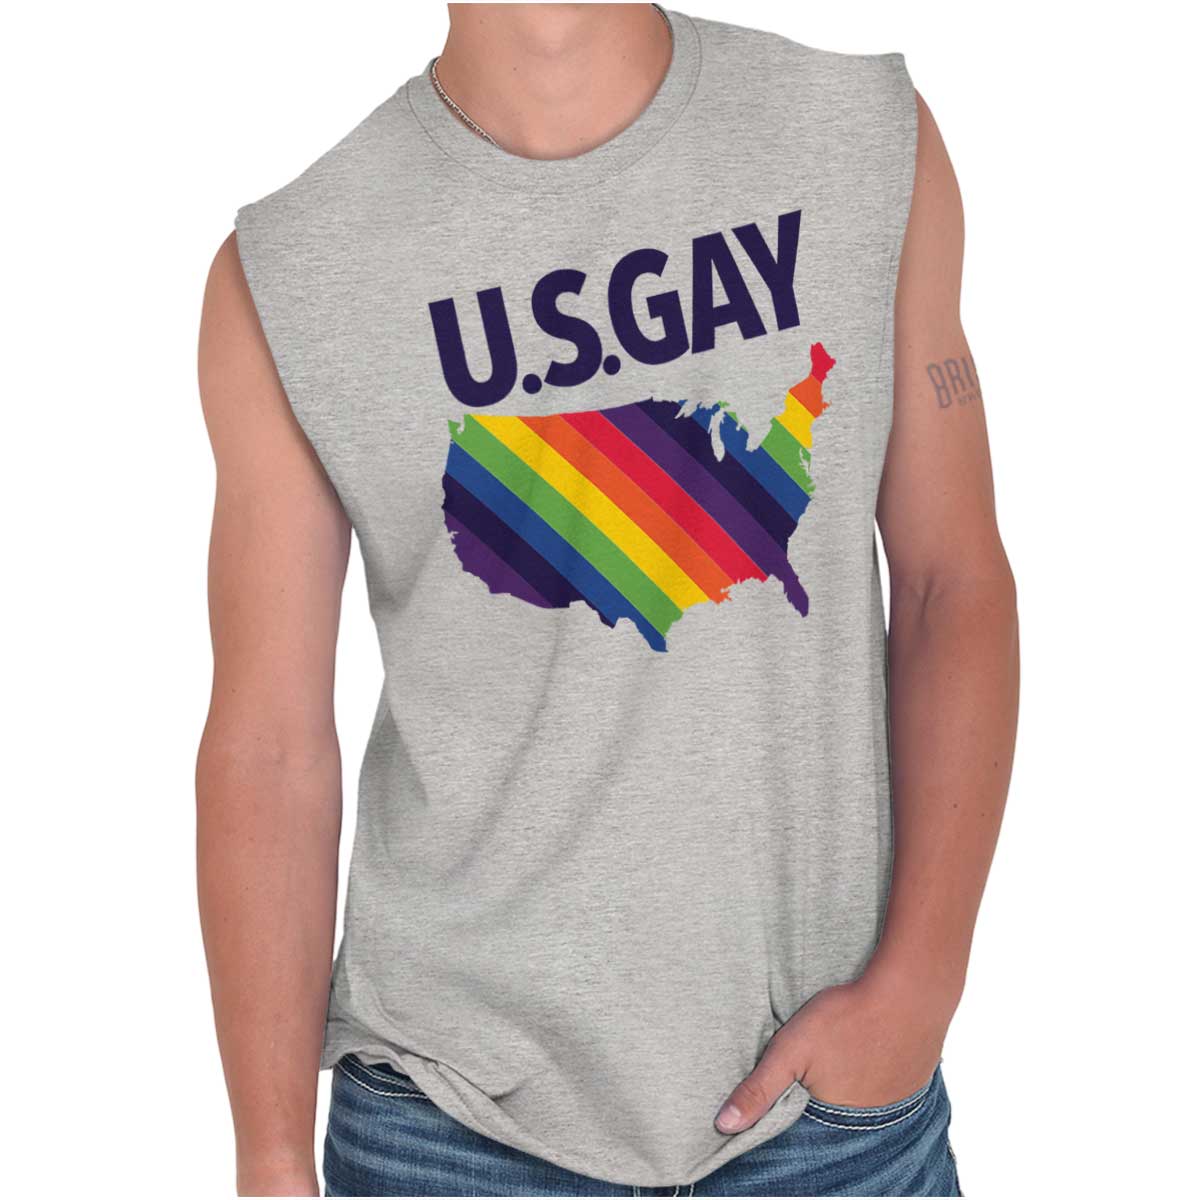 gay pride shirts near me